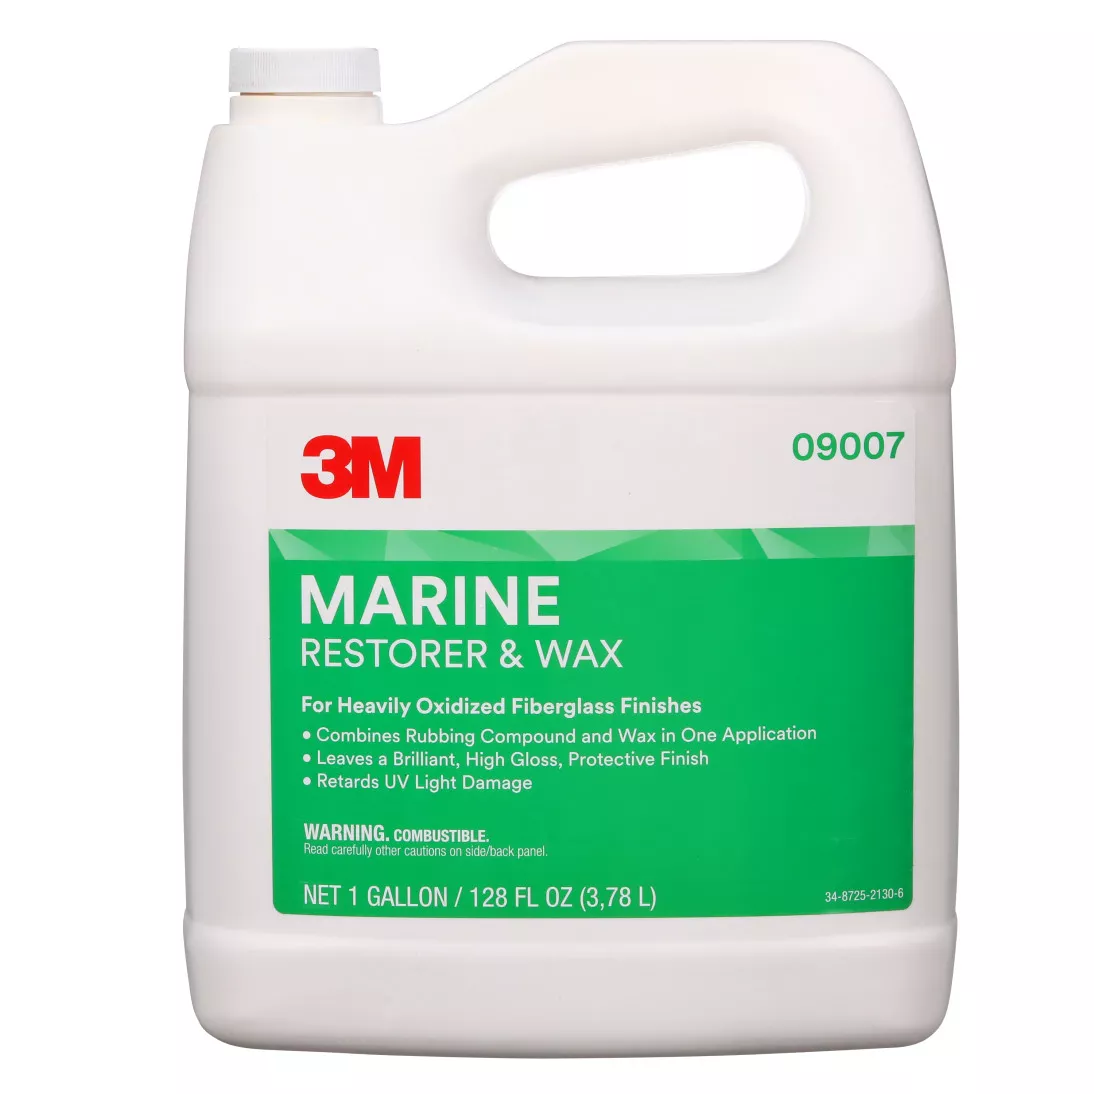 3M™ Marine Fiberglass Restorer and Wax, 09007, 1 gal, 2 per case